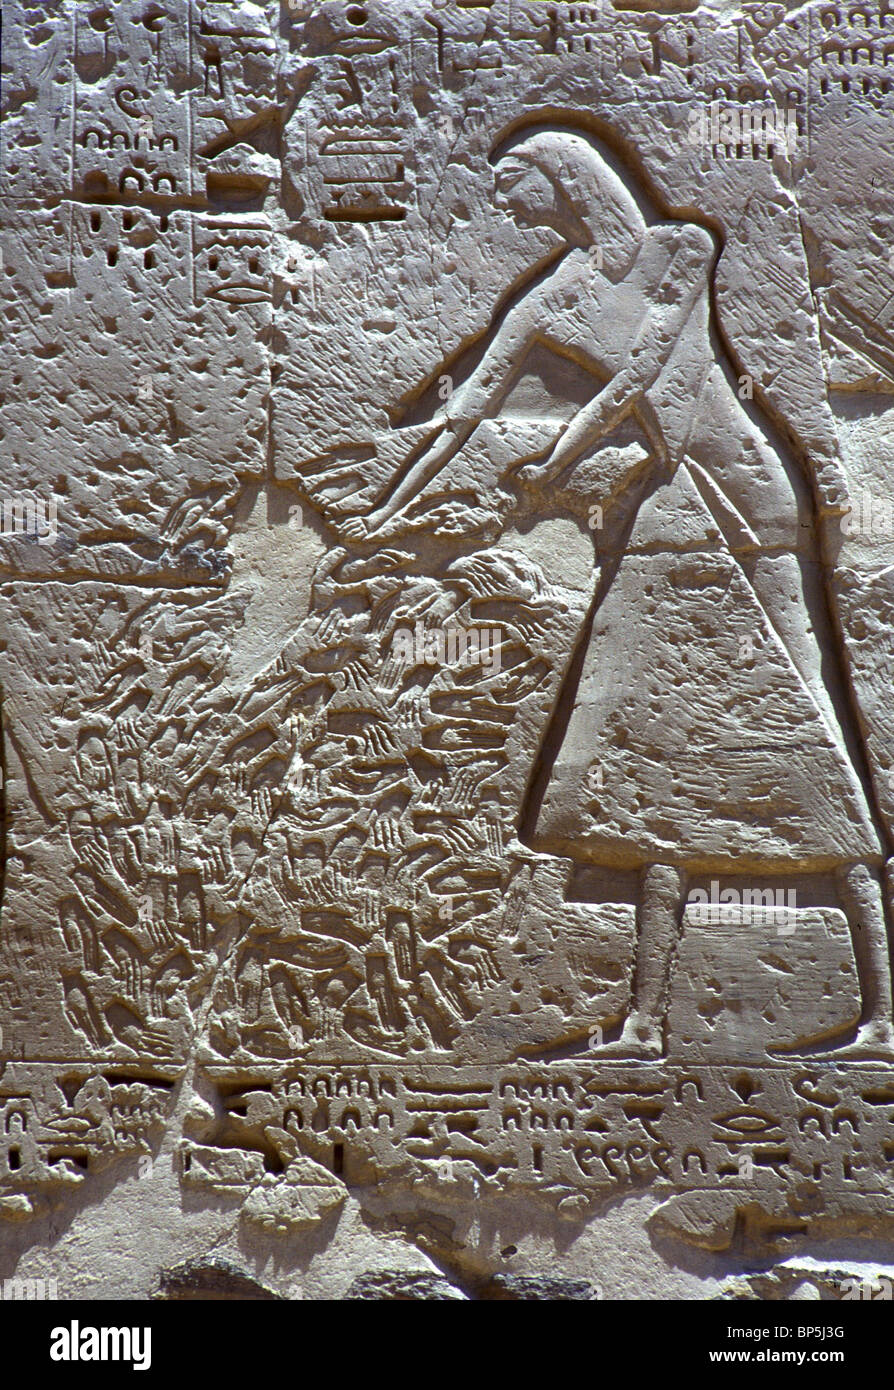 ÄGYPTISCHEN BEAMTEN ZÄHLEN DIE ABGETRENNTEN HÄNDE DER FEINDLICHEN TOTEN UM FESTZUSTELLEN, DIE ZAHL DER FEINDLICHEN SOLDATEN GETÖTET Stockfoto